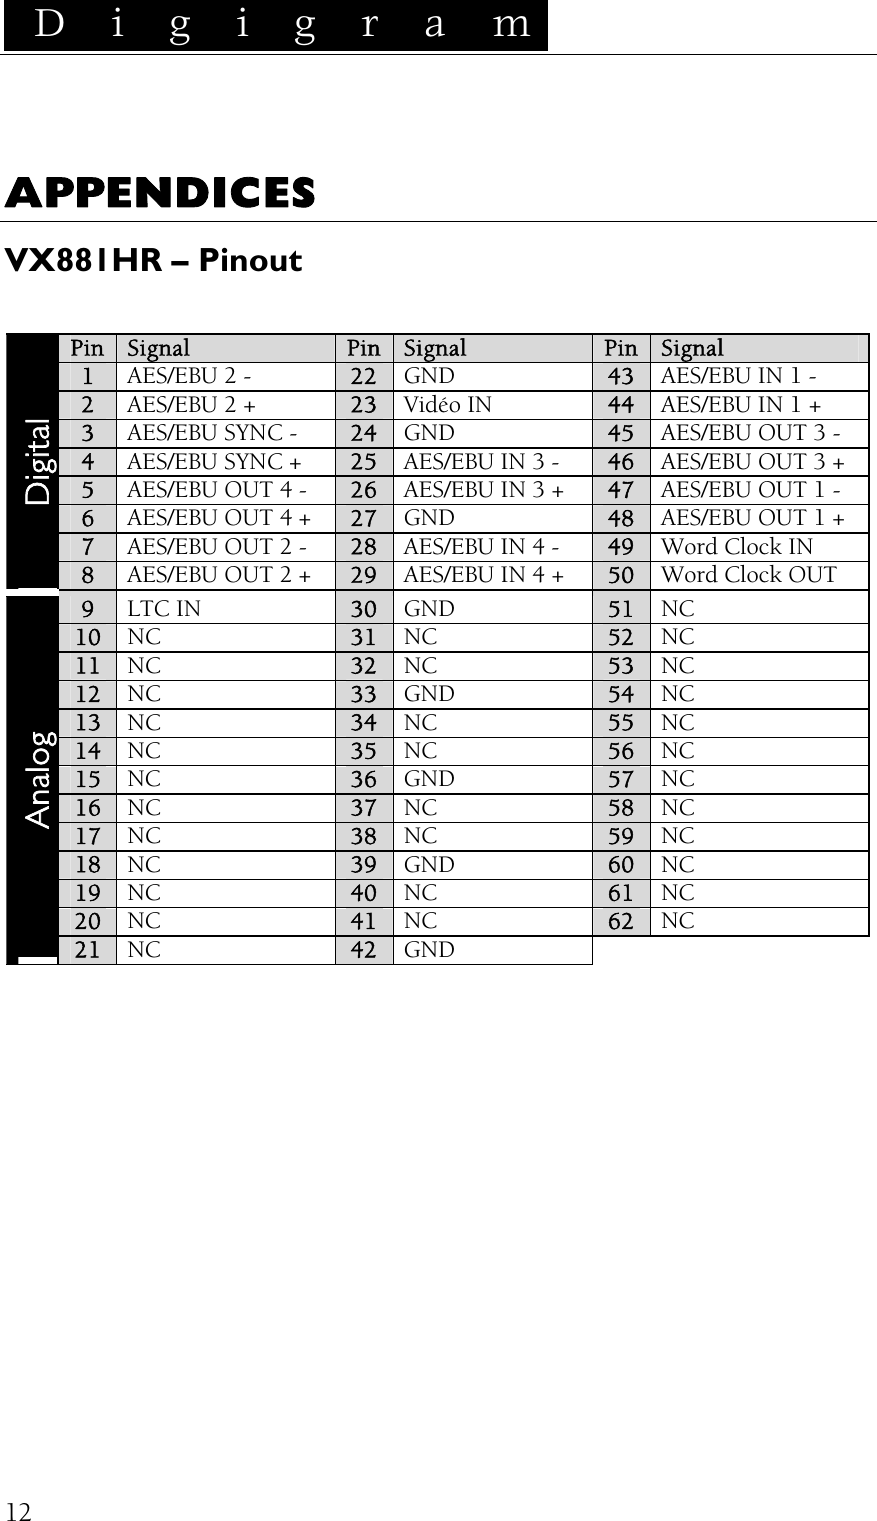  D i g i g r a m    12APPENDICES VX881HR – Pinout  Pin Signal  Pin  Signal Pin  Signal 1 AES/EBU 2 -  22  GND  43  AES/EBU IN 1 - 2 AES/EBU 2 + 23  Vidéo IN  44  AES/EBU IN 1 + 3 AES/EBU SYNC - 24  GND  45  AES/EBU OUT 3 - 4 AES/EBU SYNC + 25  AES/EBU IN 3 -  46  AES/EBU OUT 3 + 5 AES/EBU OUT 4 - 26  AES/EBU IN 3 +  47  AES/EBU OUT 1 - 6 AES/EBU OUT 4 + 27  GND  48  AES/EBU OUT 1 + 7 AES/EBU OUT 2 - 28  AES/EBU IN 4 -  49  Word Clock IN Digital 8 AES/EBU OUT 2 + 29  AES/EBU IN 4 +  50  Word Clock OUT 9 LTC IN 30  GND  51  NC 10 NC 31  NC  52  NC 11 NC 32  NC  53  NC 12 NC 33  GND  54  NC 13 NC 34  NC  55  NC 14 NC  35  NC  56  NC 15 NC  36  GND  57  NC 16  NC 37  NC  58  NC 17  NC 38  NC  59  NC 18  NC  39  GND  60  NC 19  NC  40  NC  61  NC 20  NC  41  NC  62  NC Analog 21  NC  42  GND  